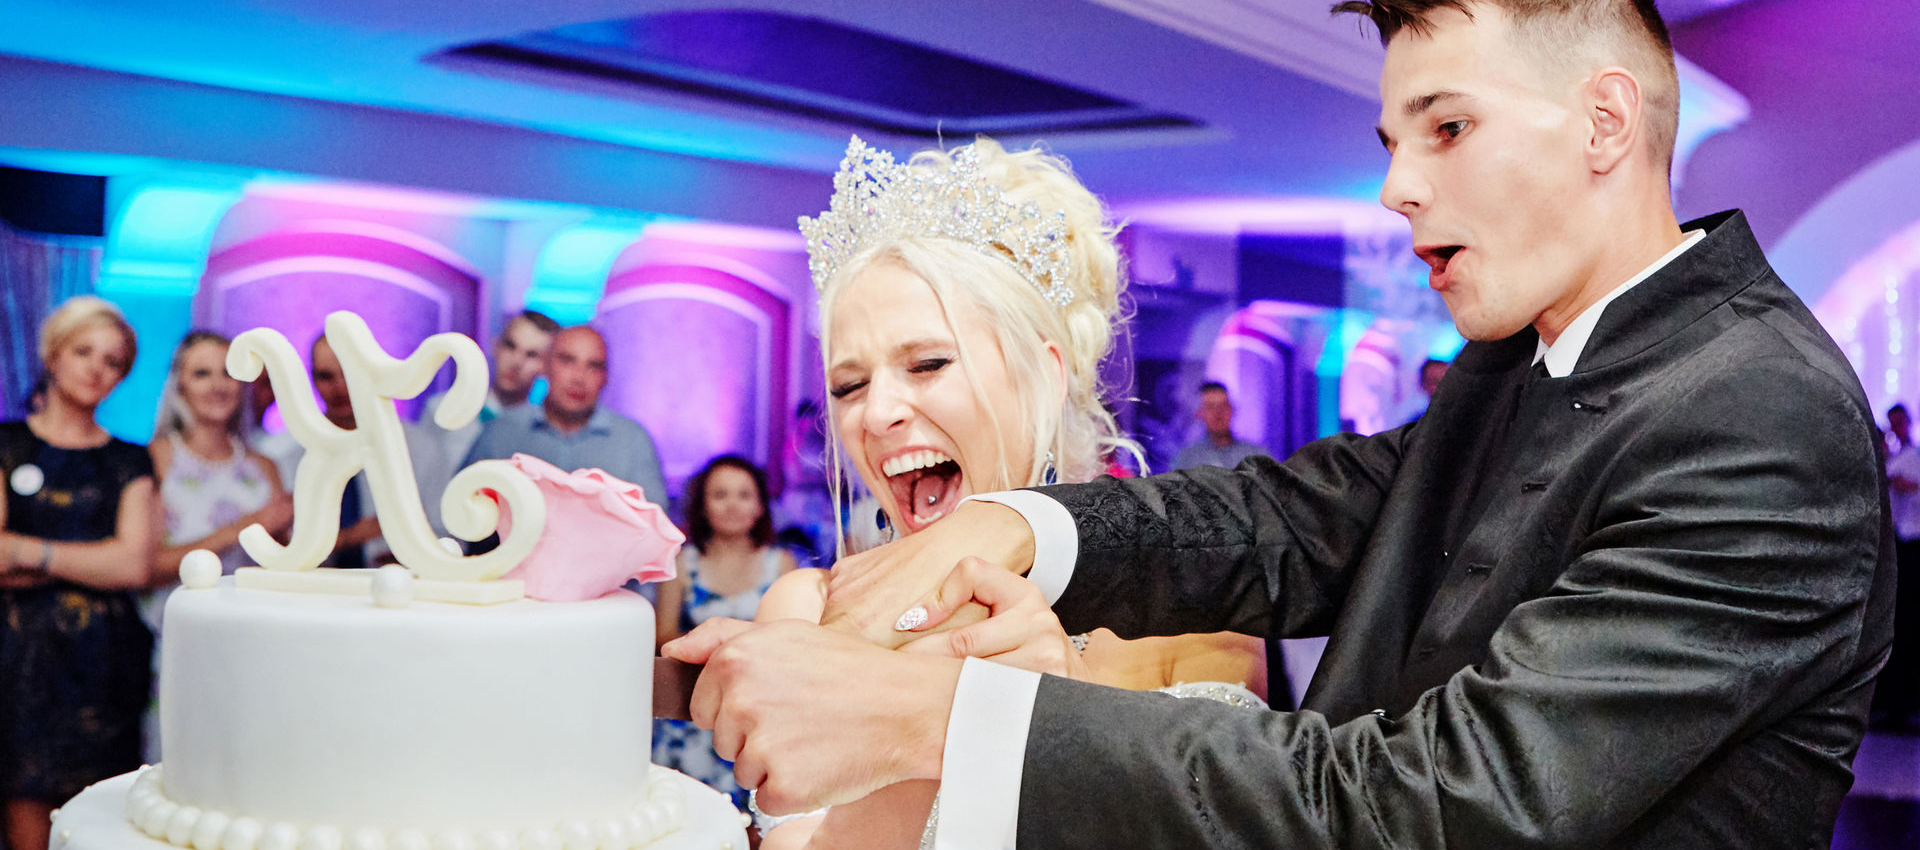 Fotograf weselny Lublin - młoda para krojąca tort weselny